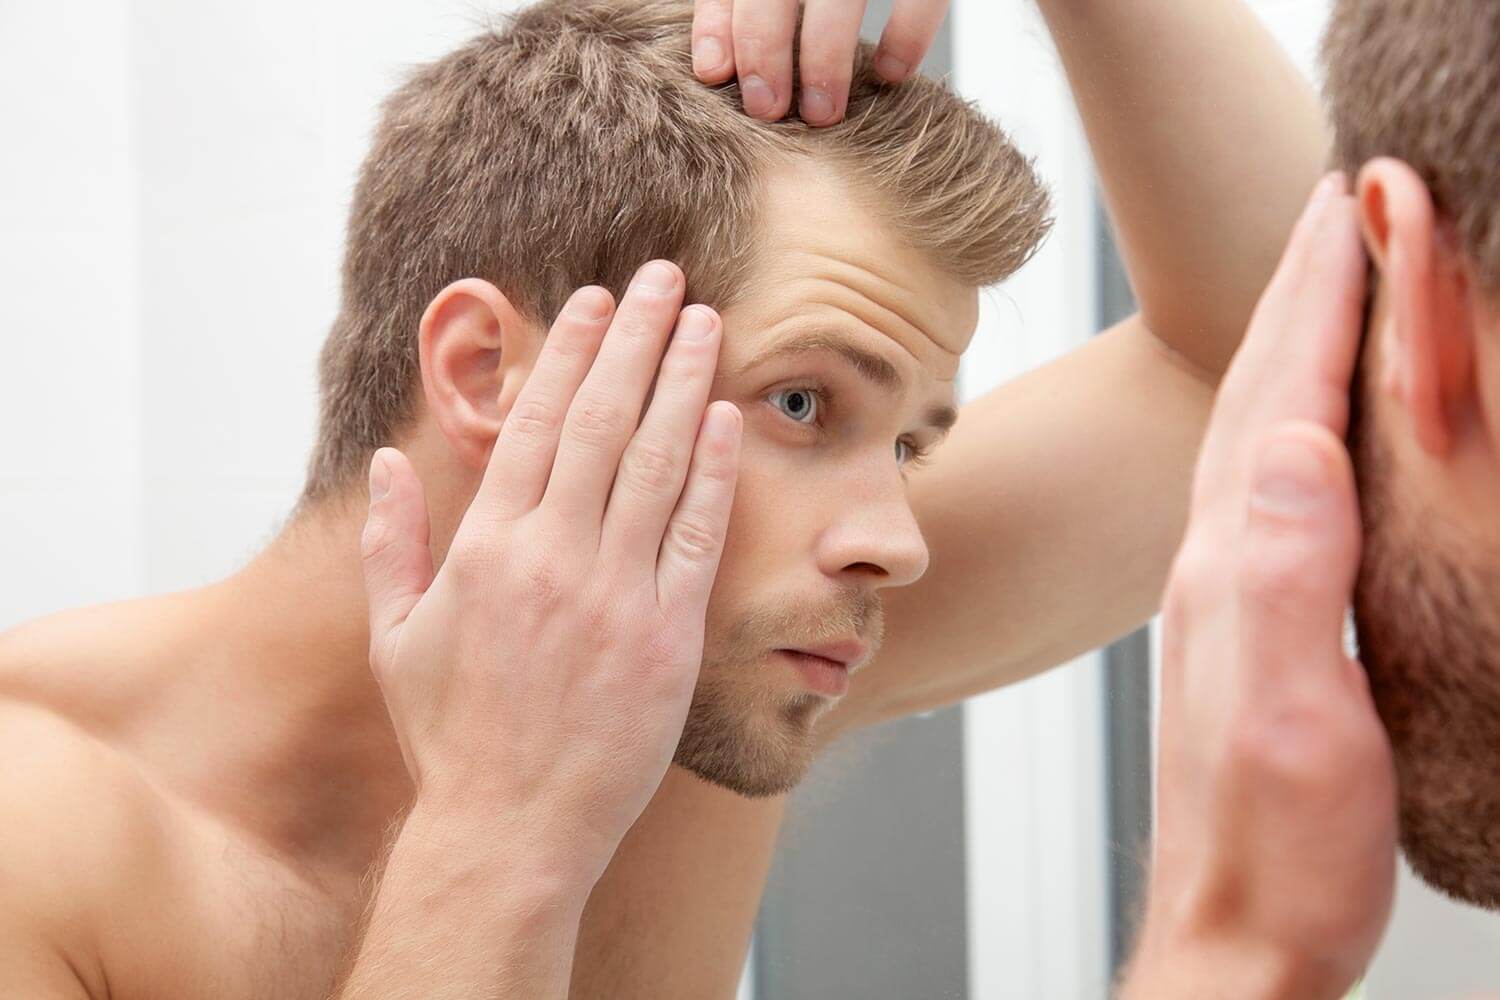 comment fonctionne le shampoing anti-chute de cheveux ?